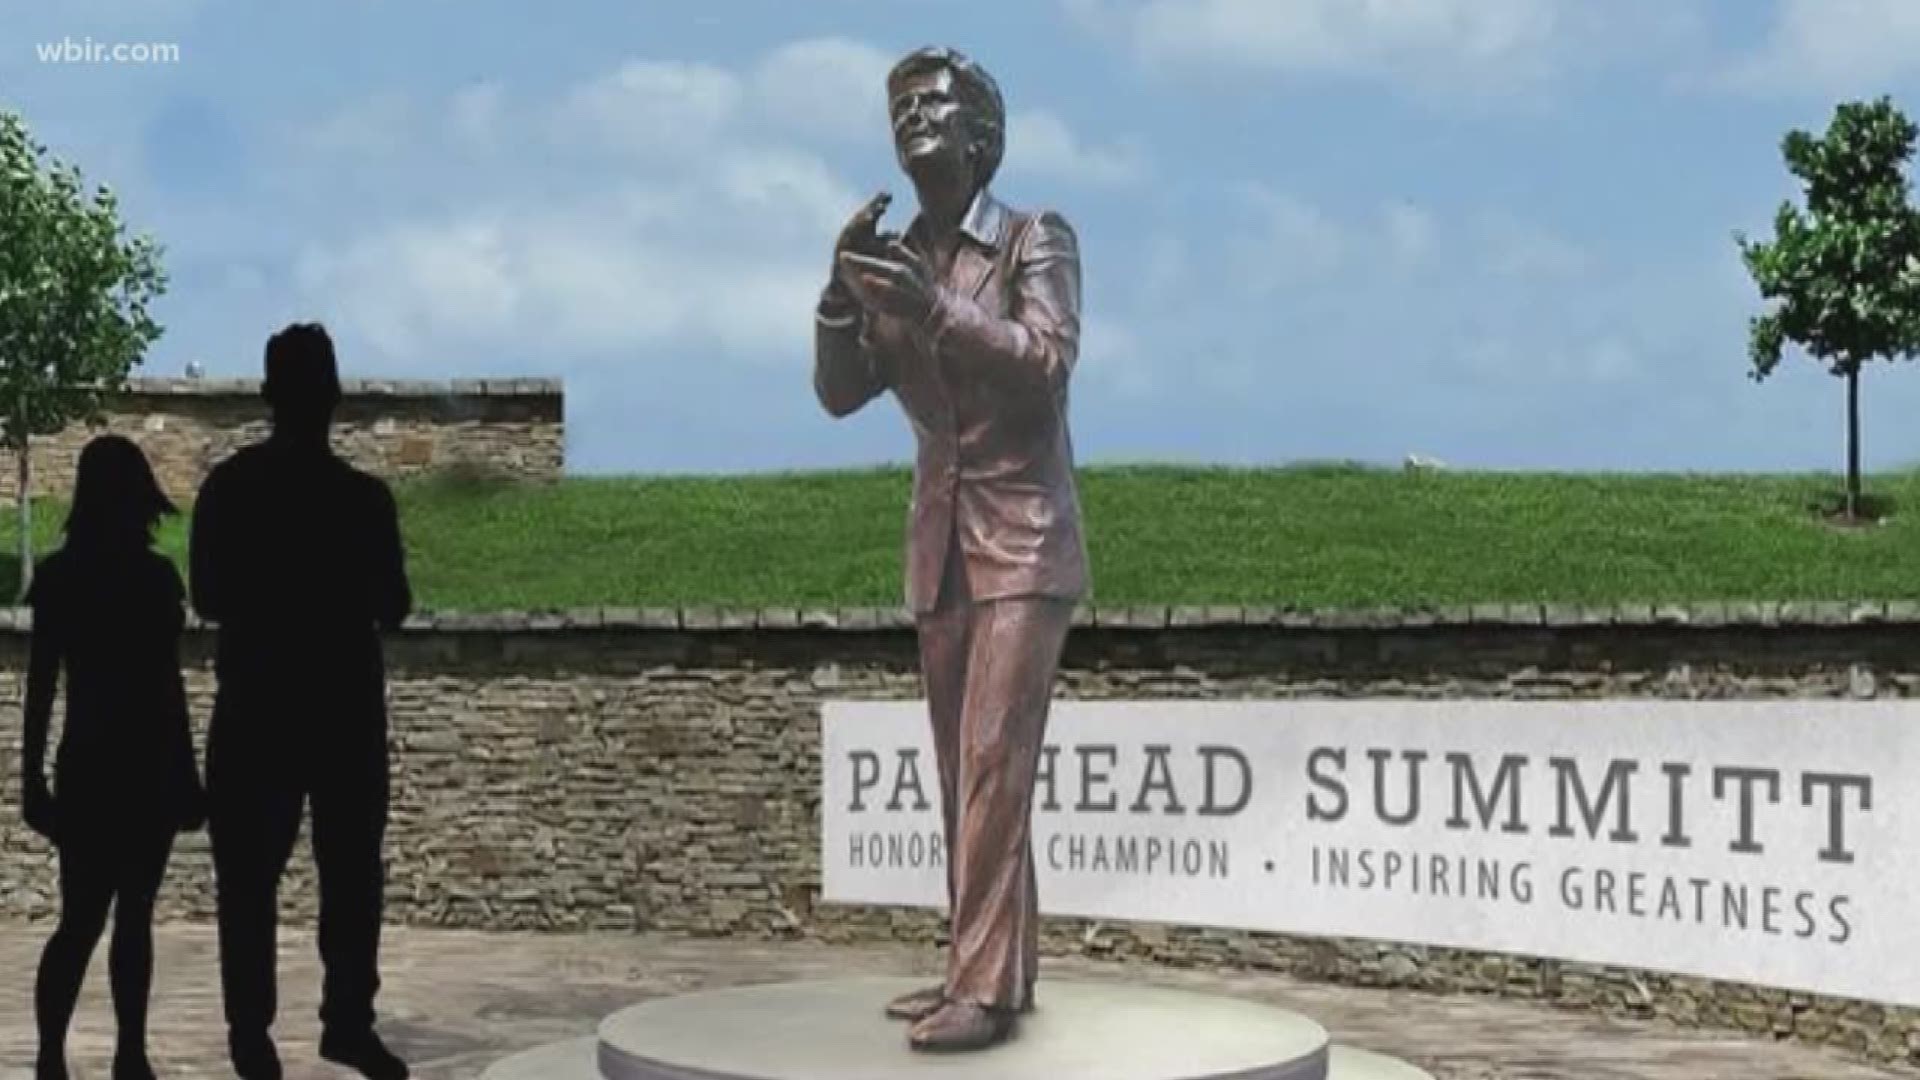 Clarksville will dedicate a bronze statue of Summitt on June 15.